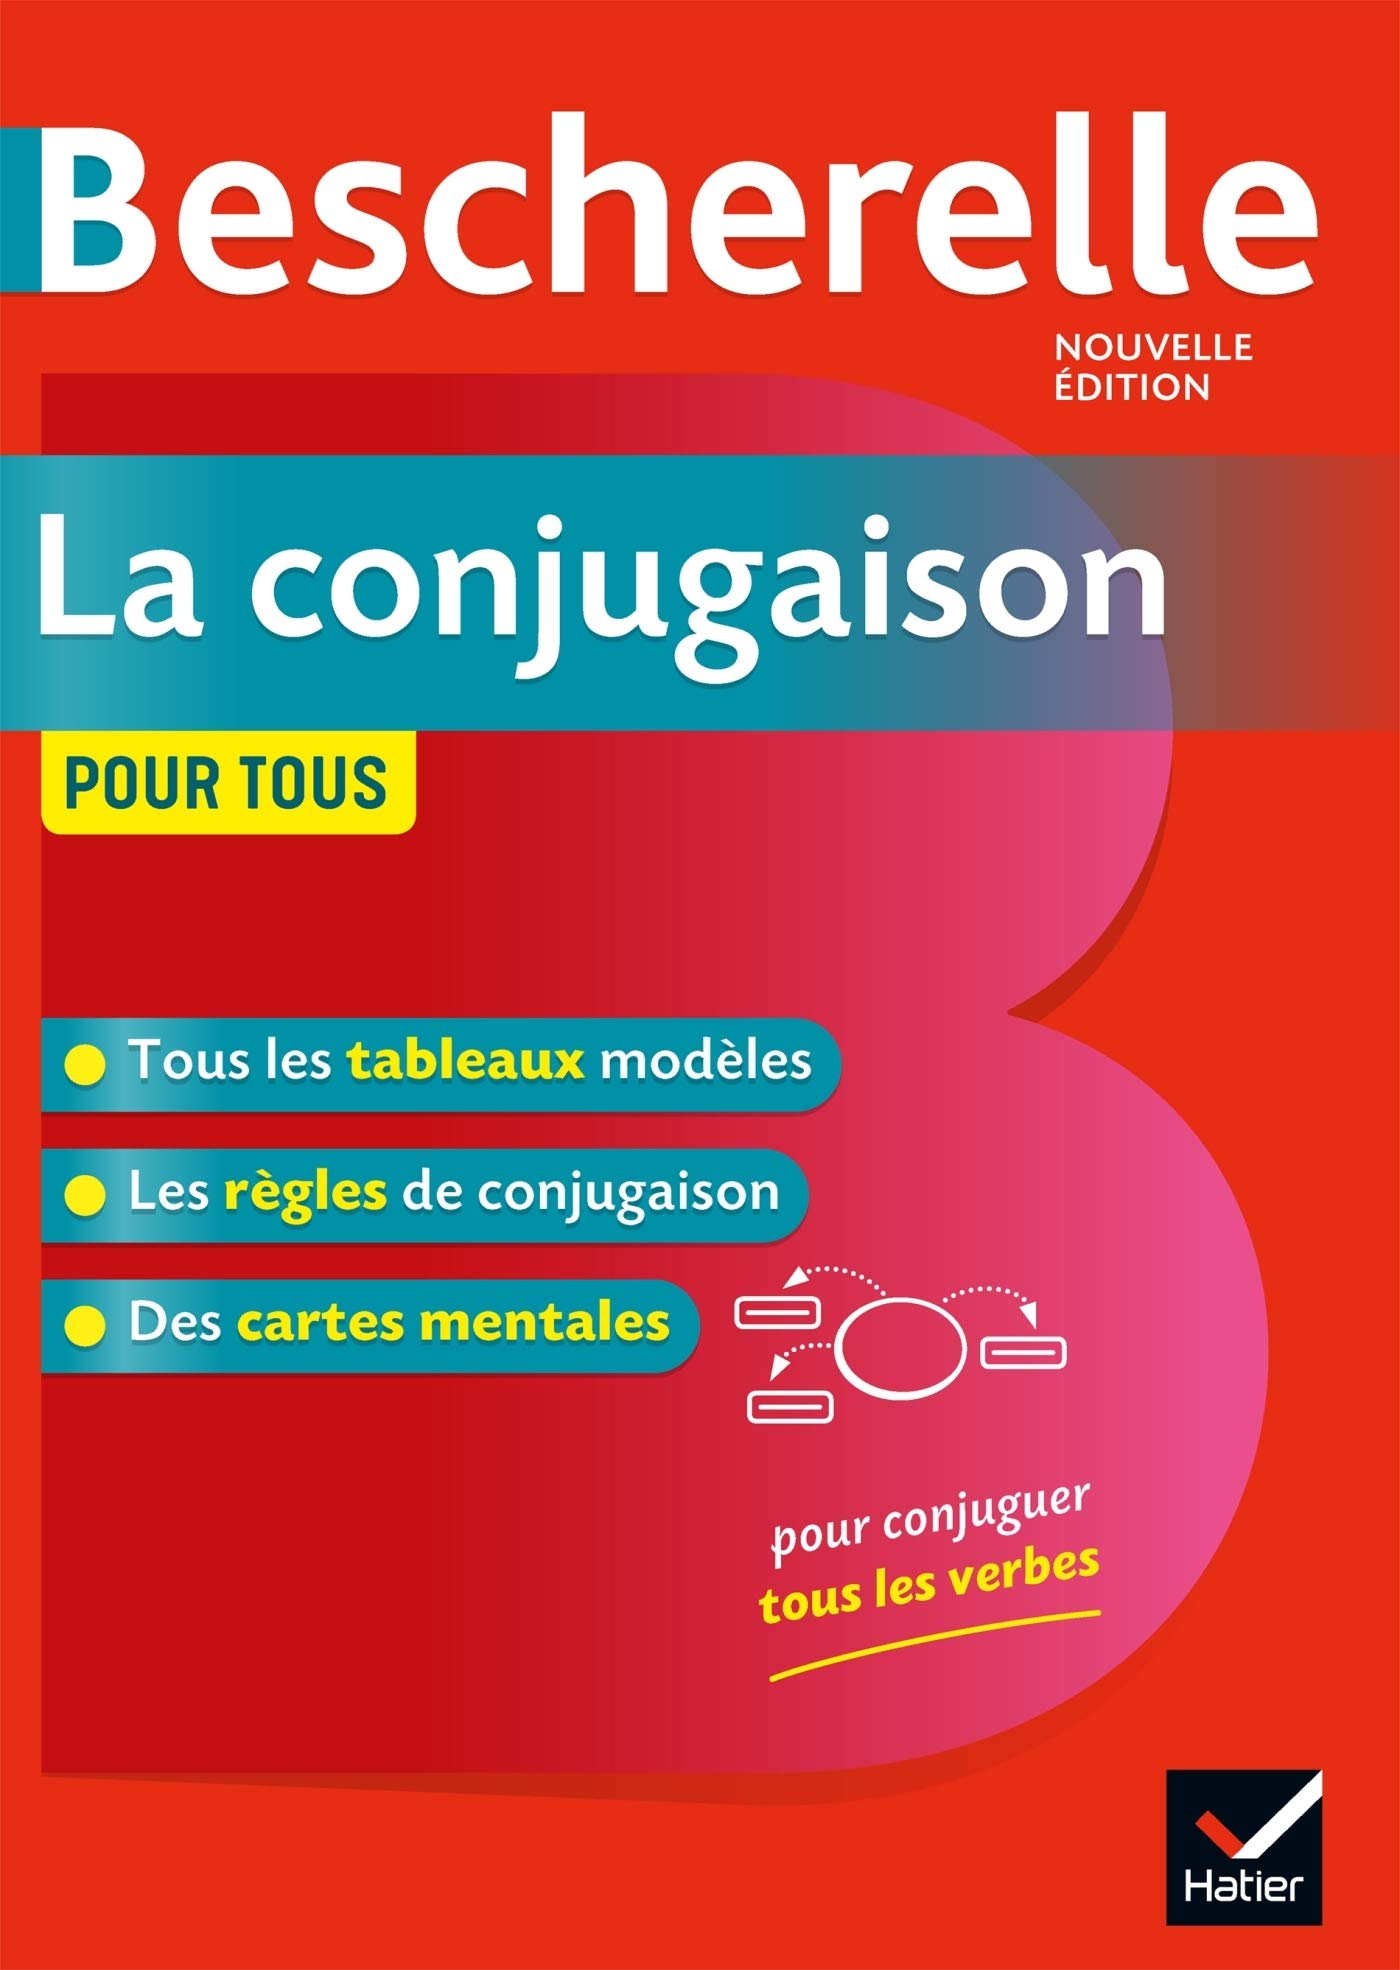 Bescherelle La conjugaison pour tous (Nouvelle edition) / Справочник спряжения глаголов